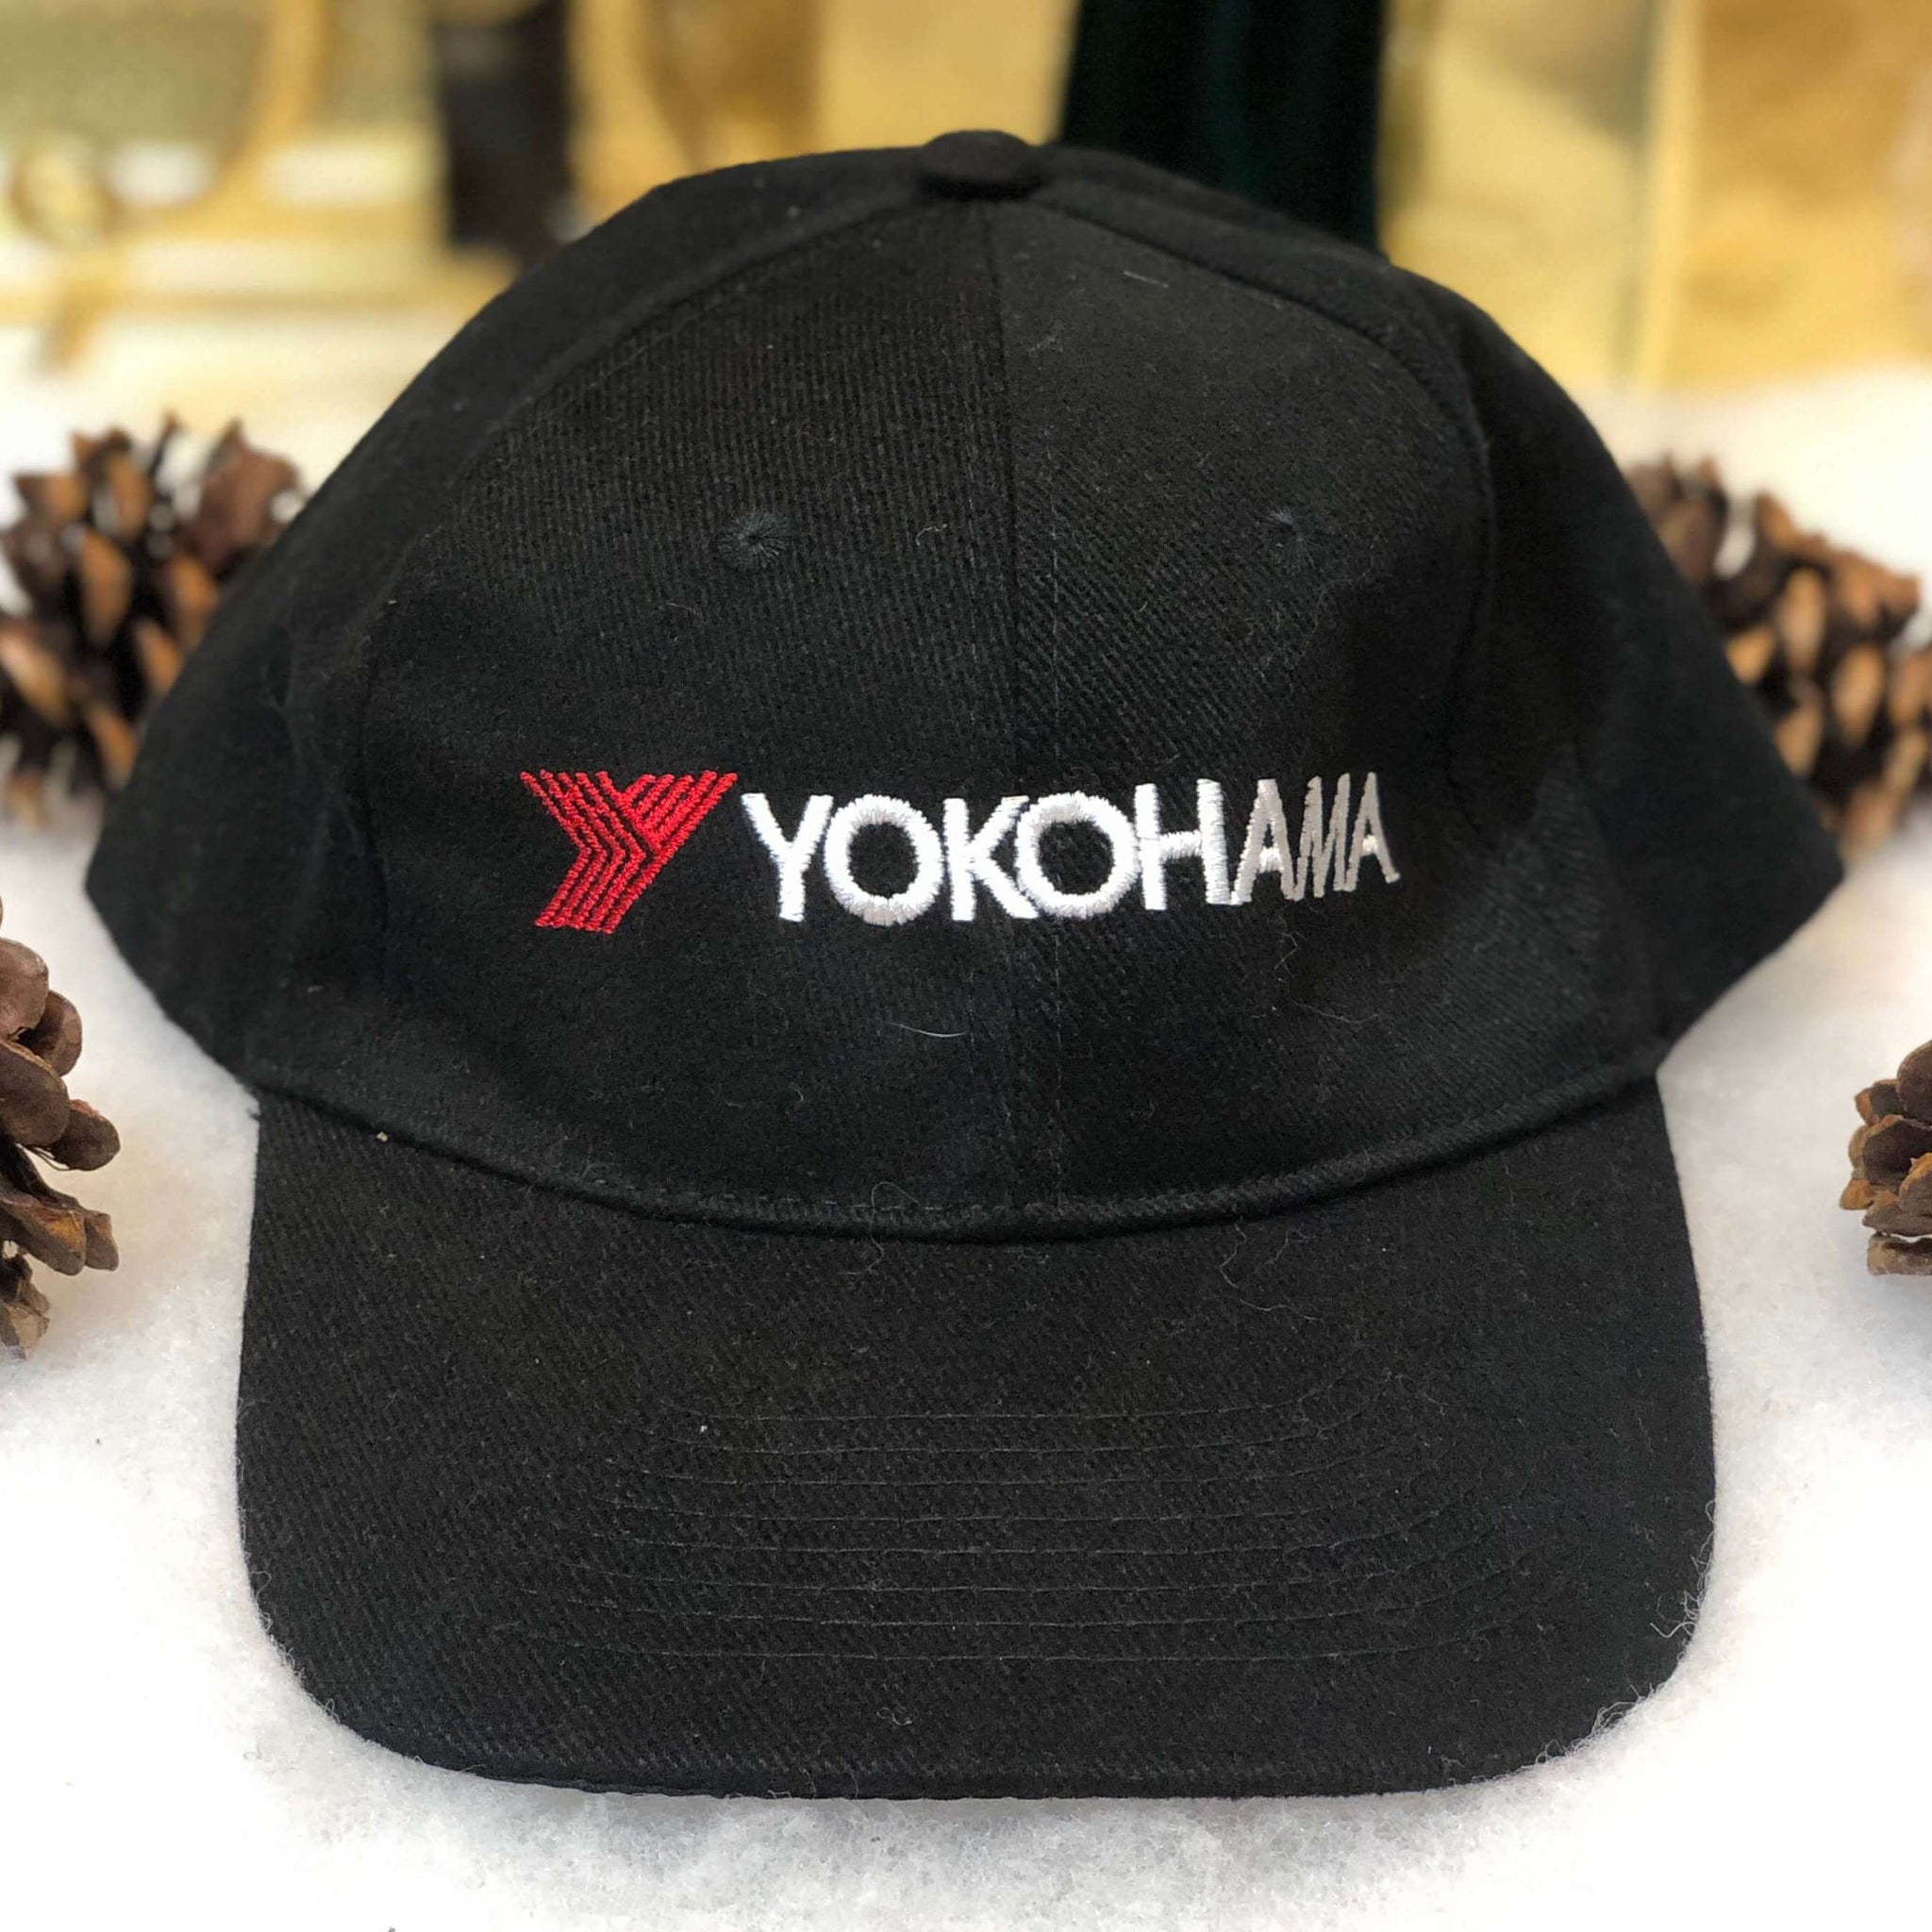 Yokohama Tire Company Strapback Hat